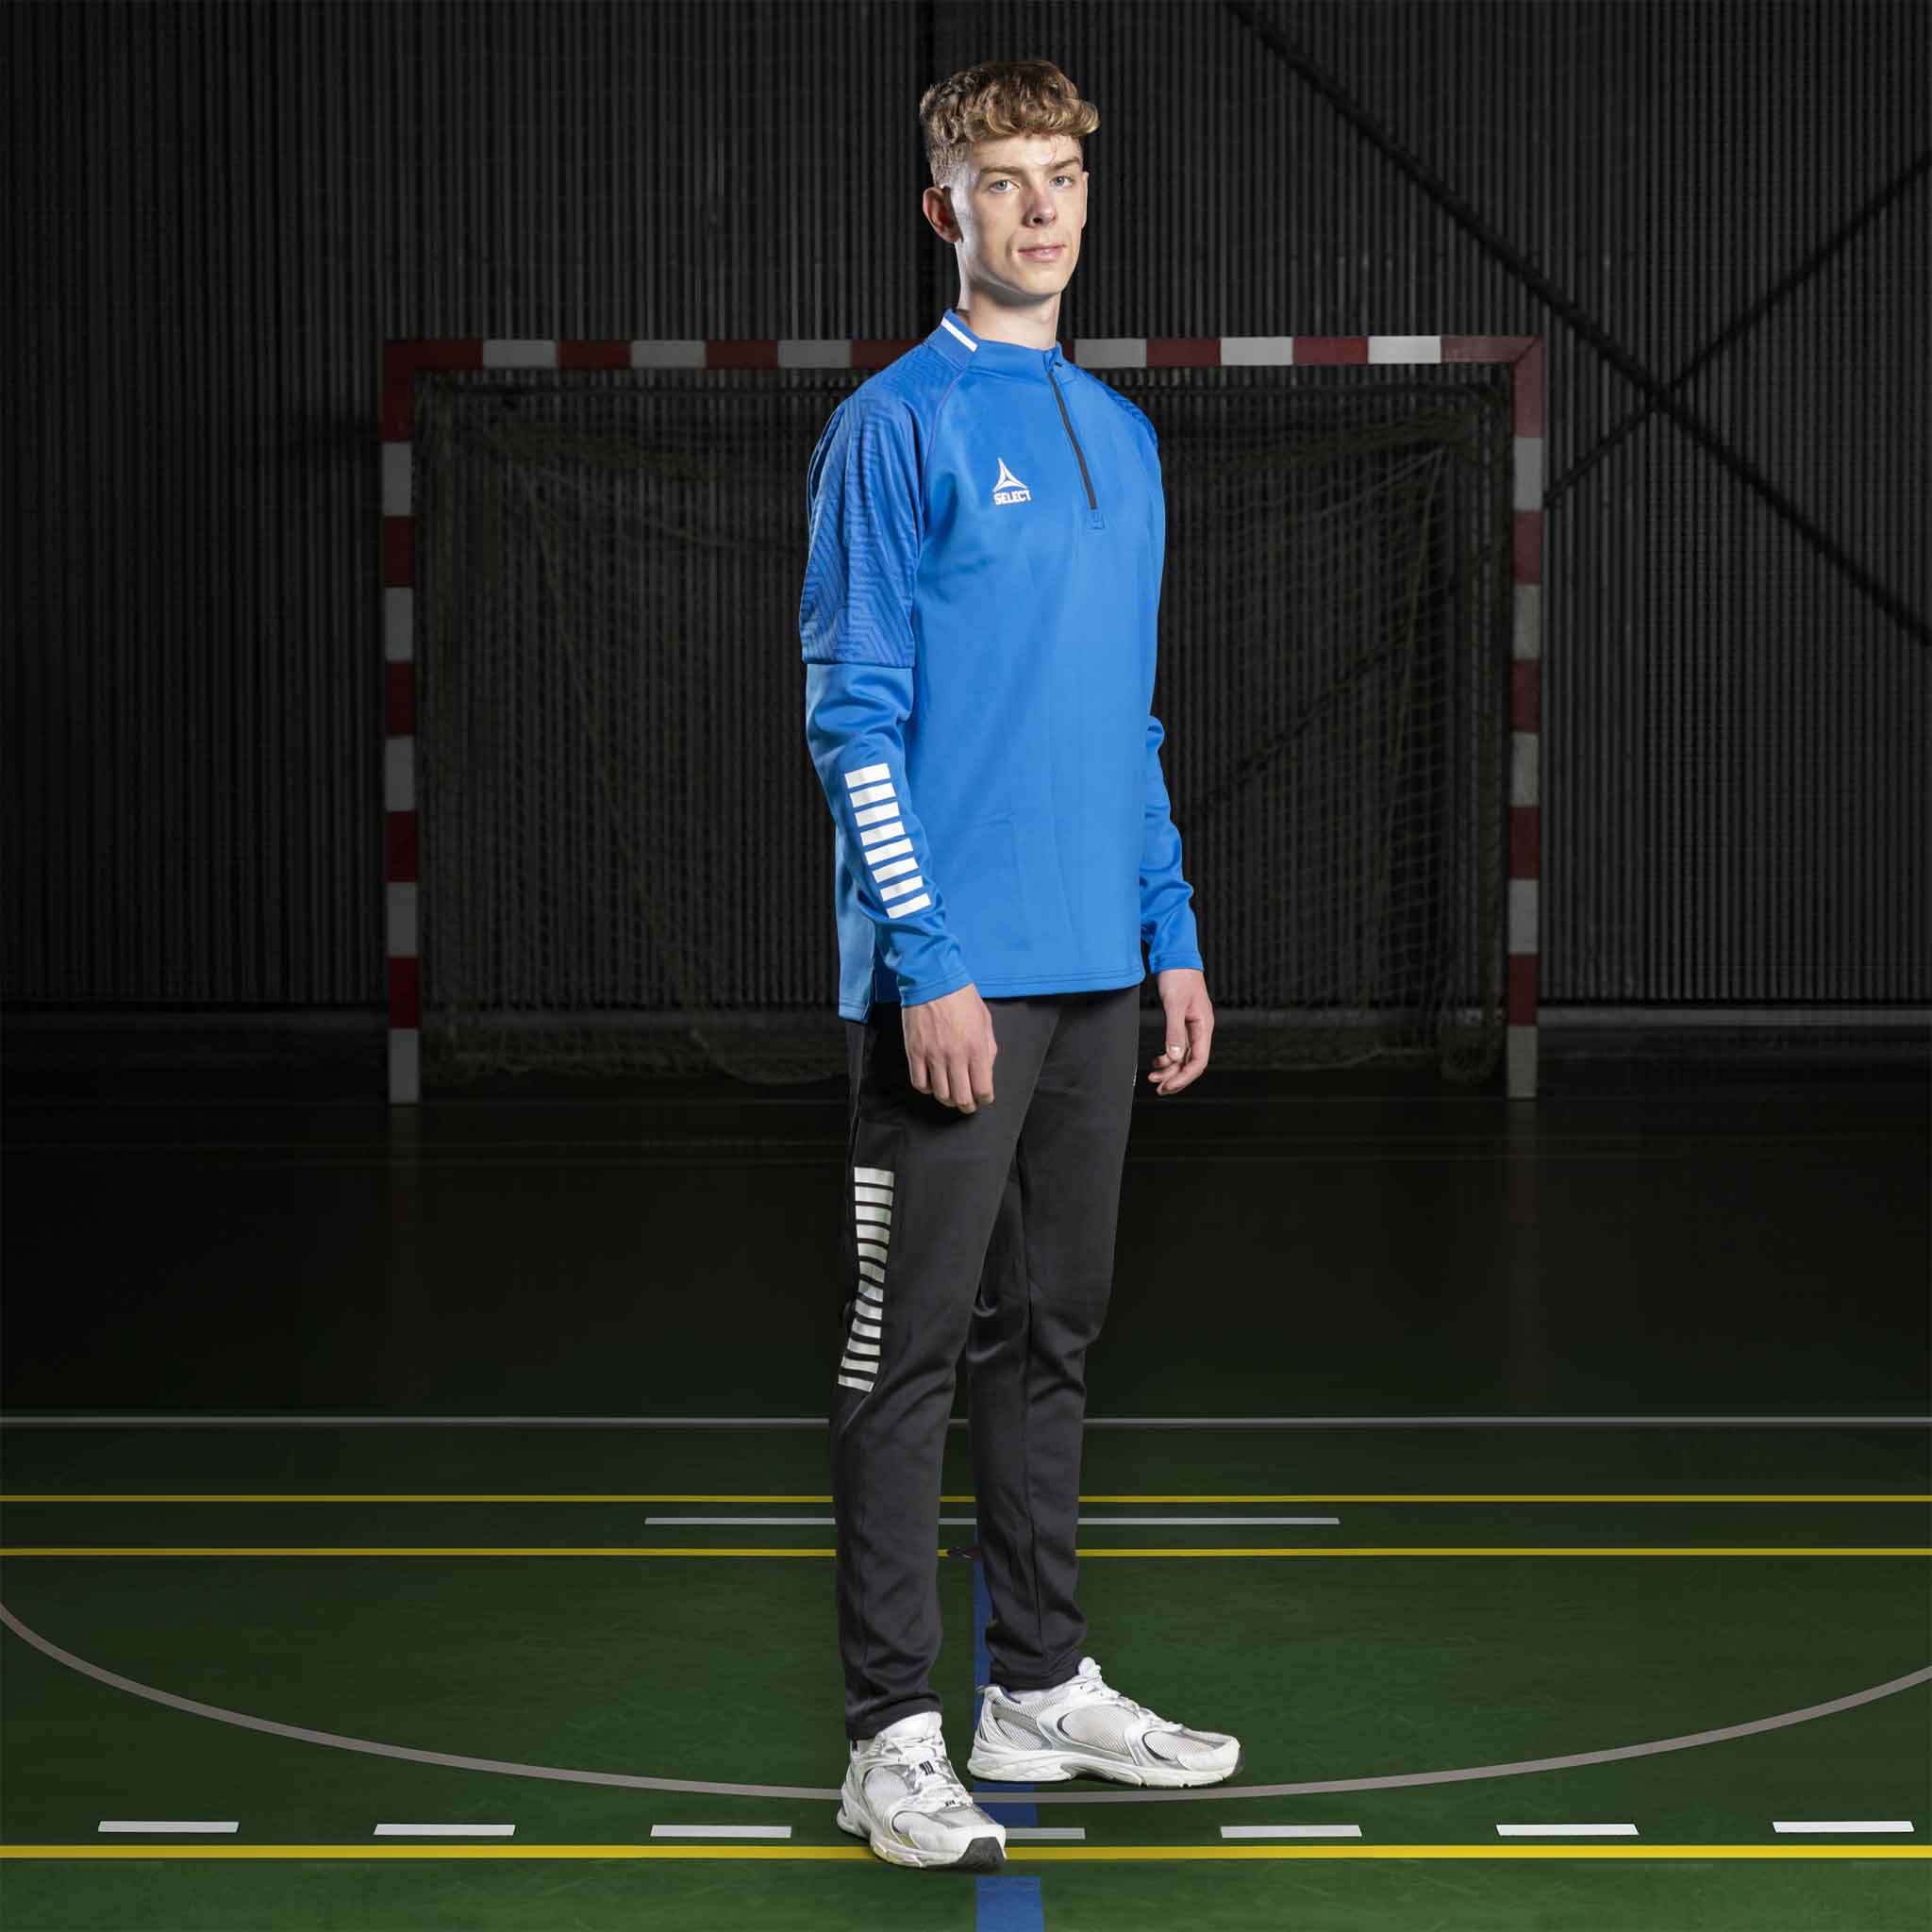 Monaco Sweatshirt för träning 1/2 dragkedja #färg_blå/vit